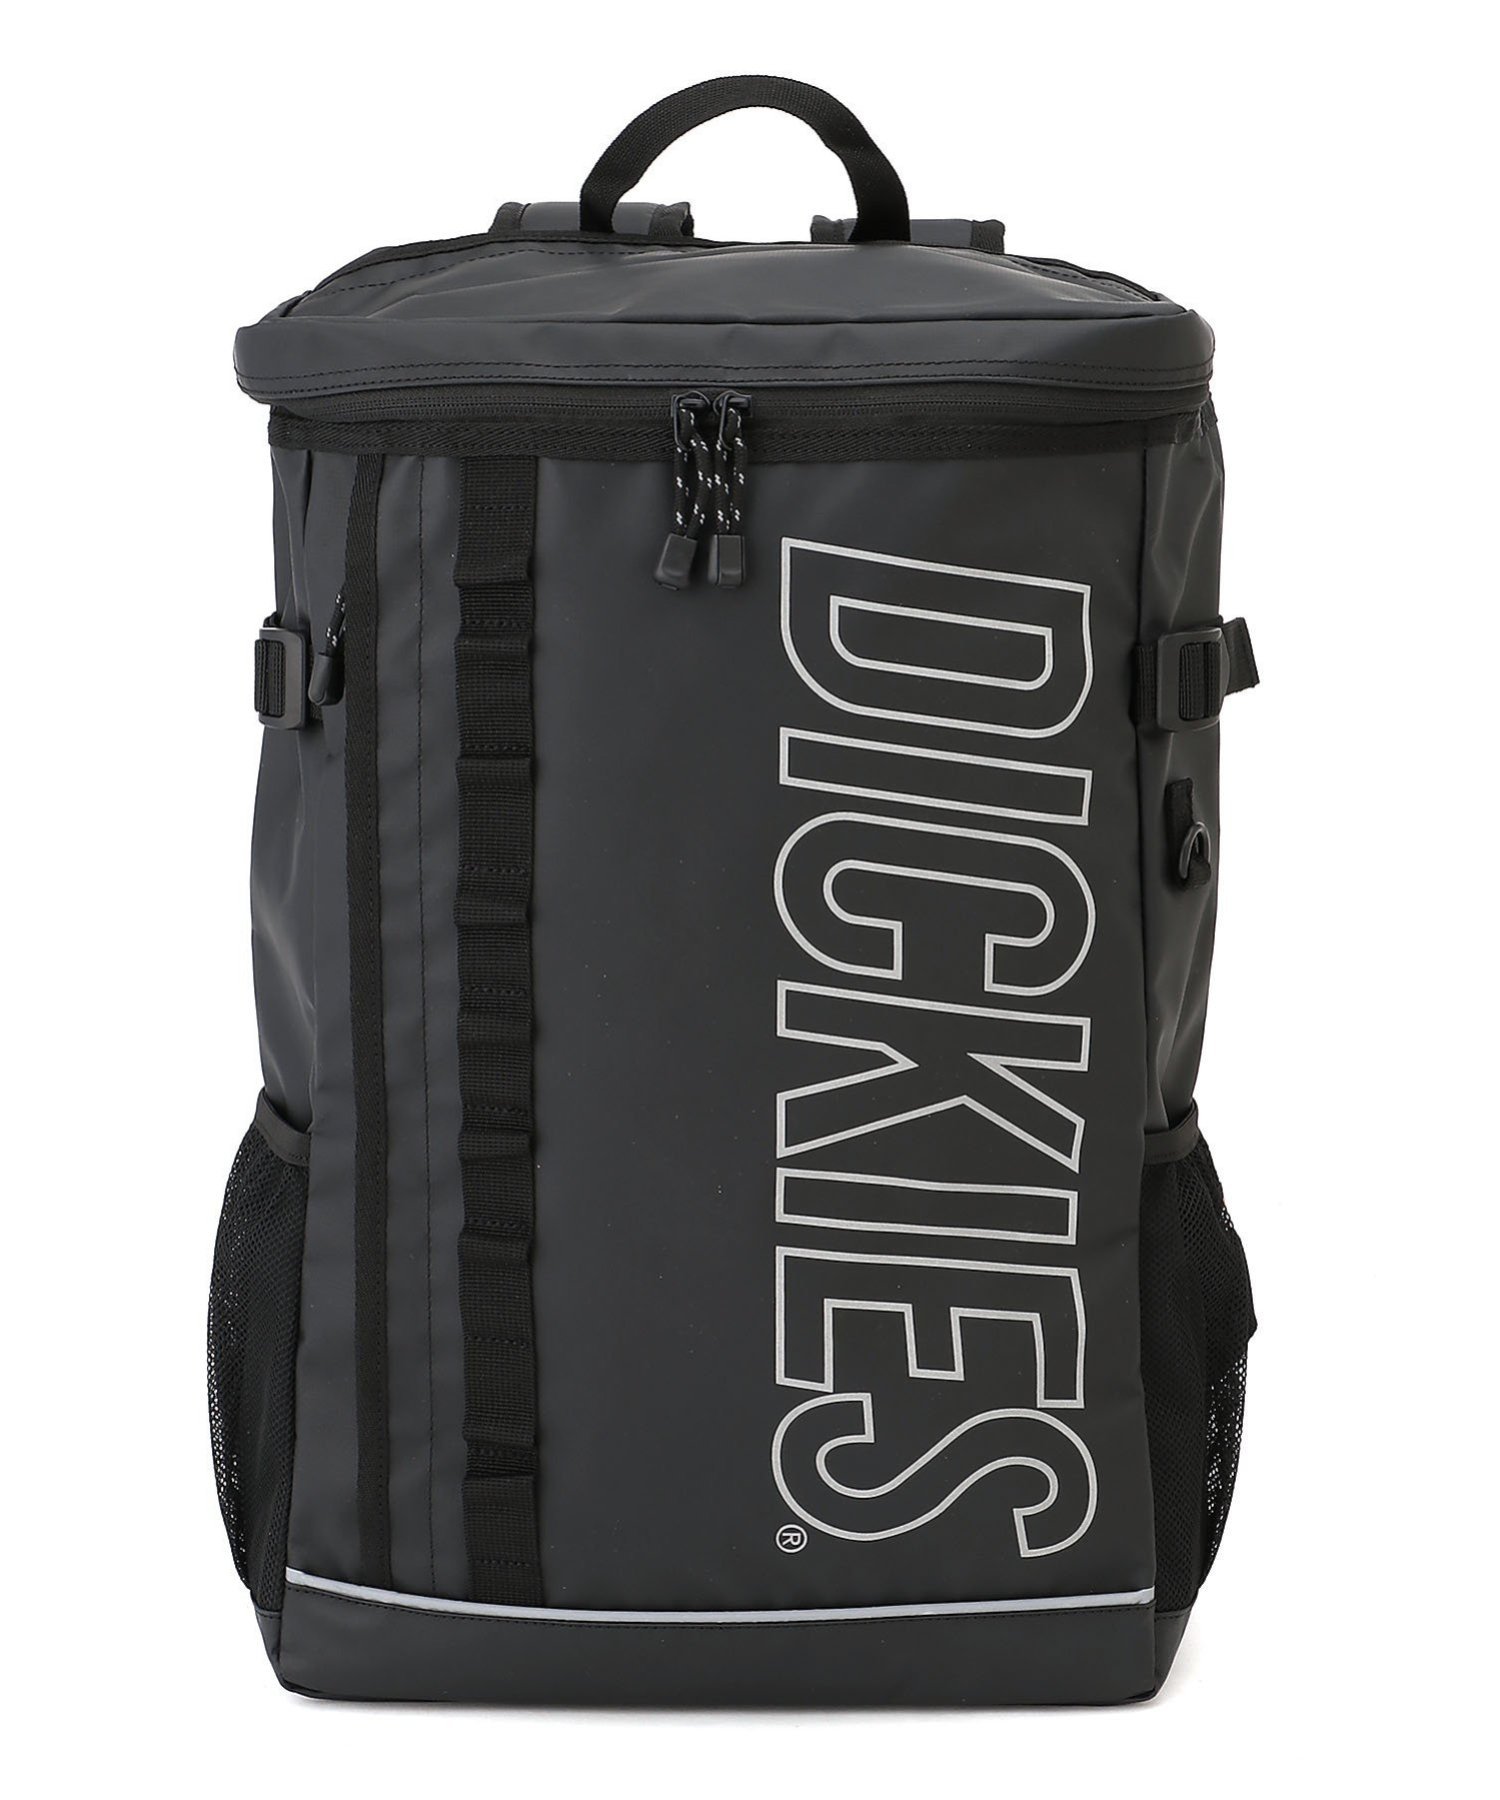 ディッキーズ バッグ メンズ Dickies DICKIES/(U)DK OL LOGO BOX BACKPACK ハンドサイン バッグ リュック・バックパック ブラック【送料無料】